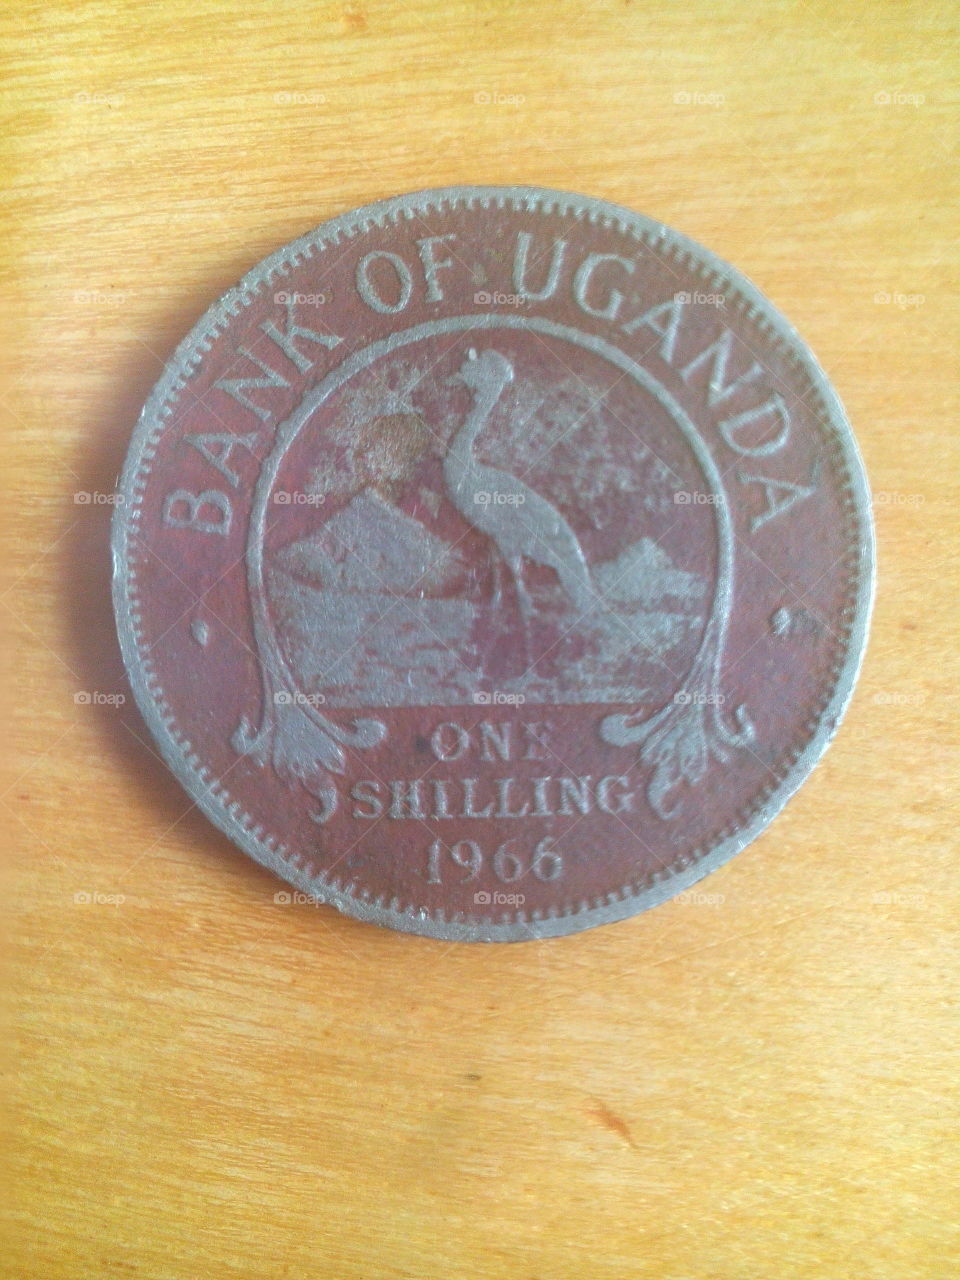 1966 Uganda one shilling